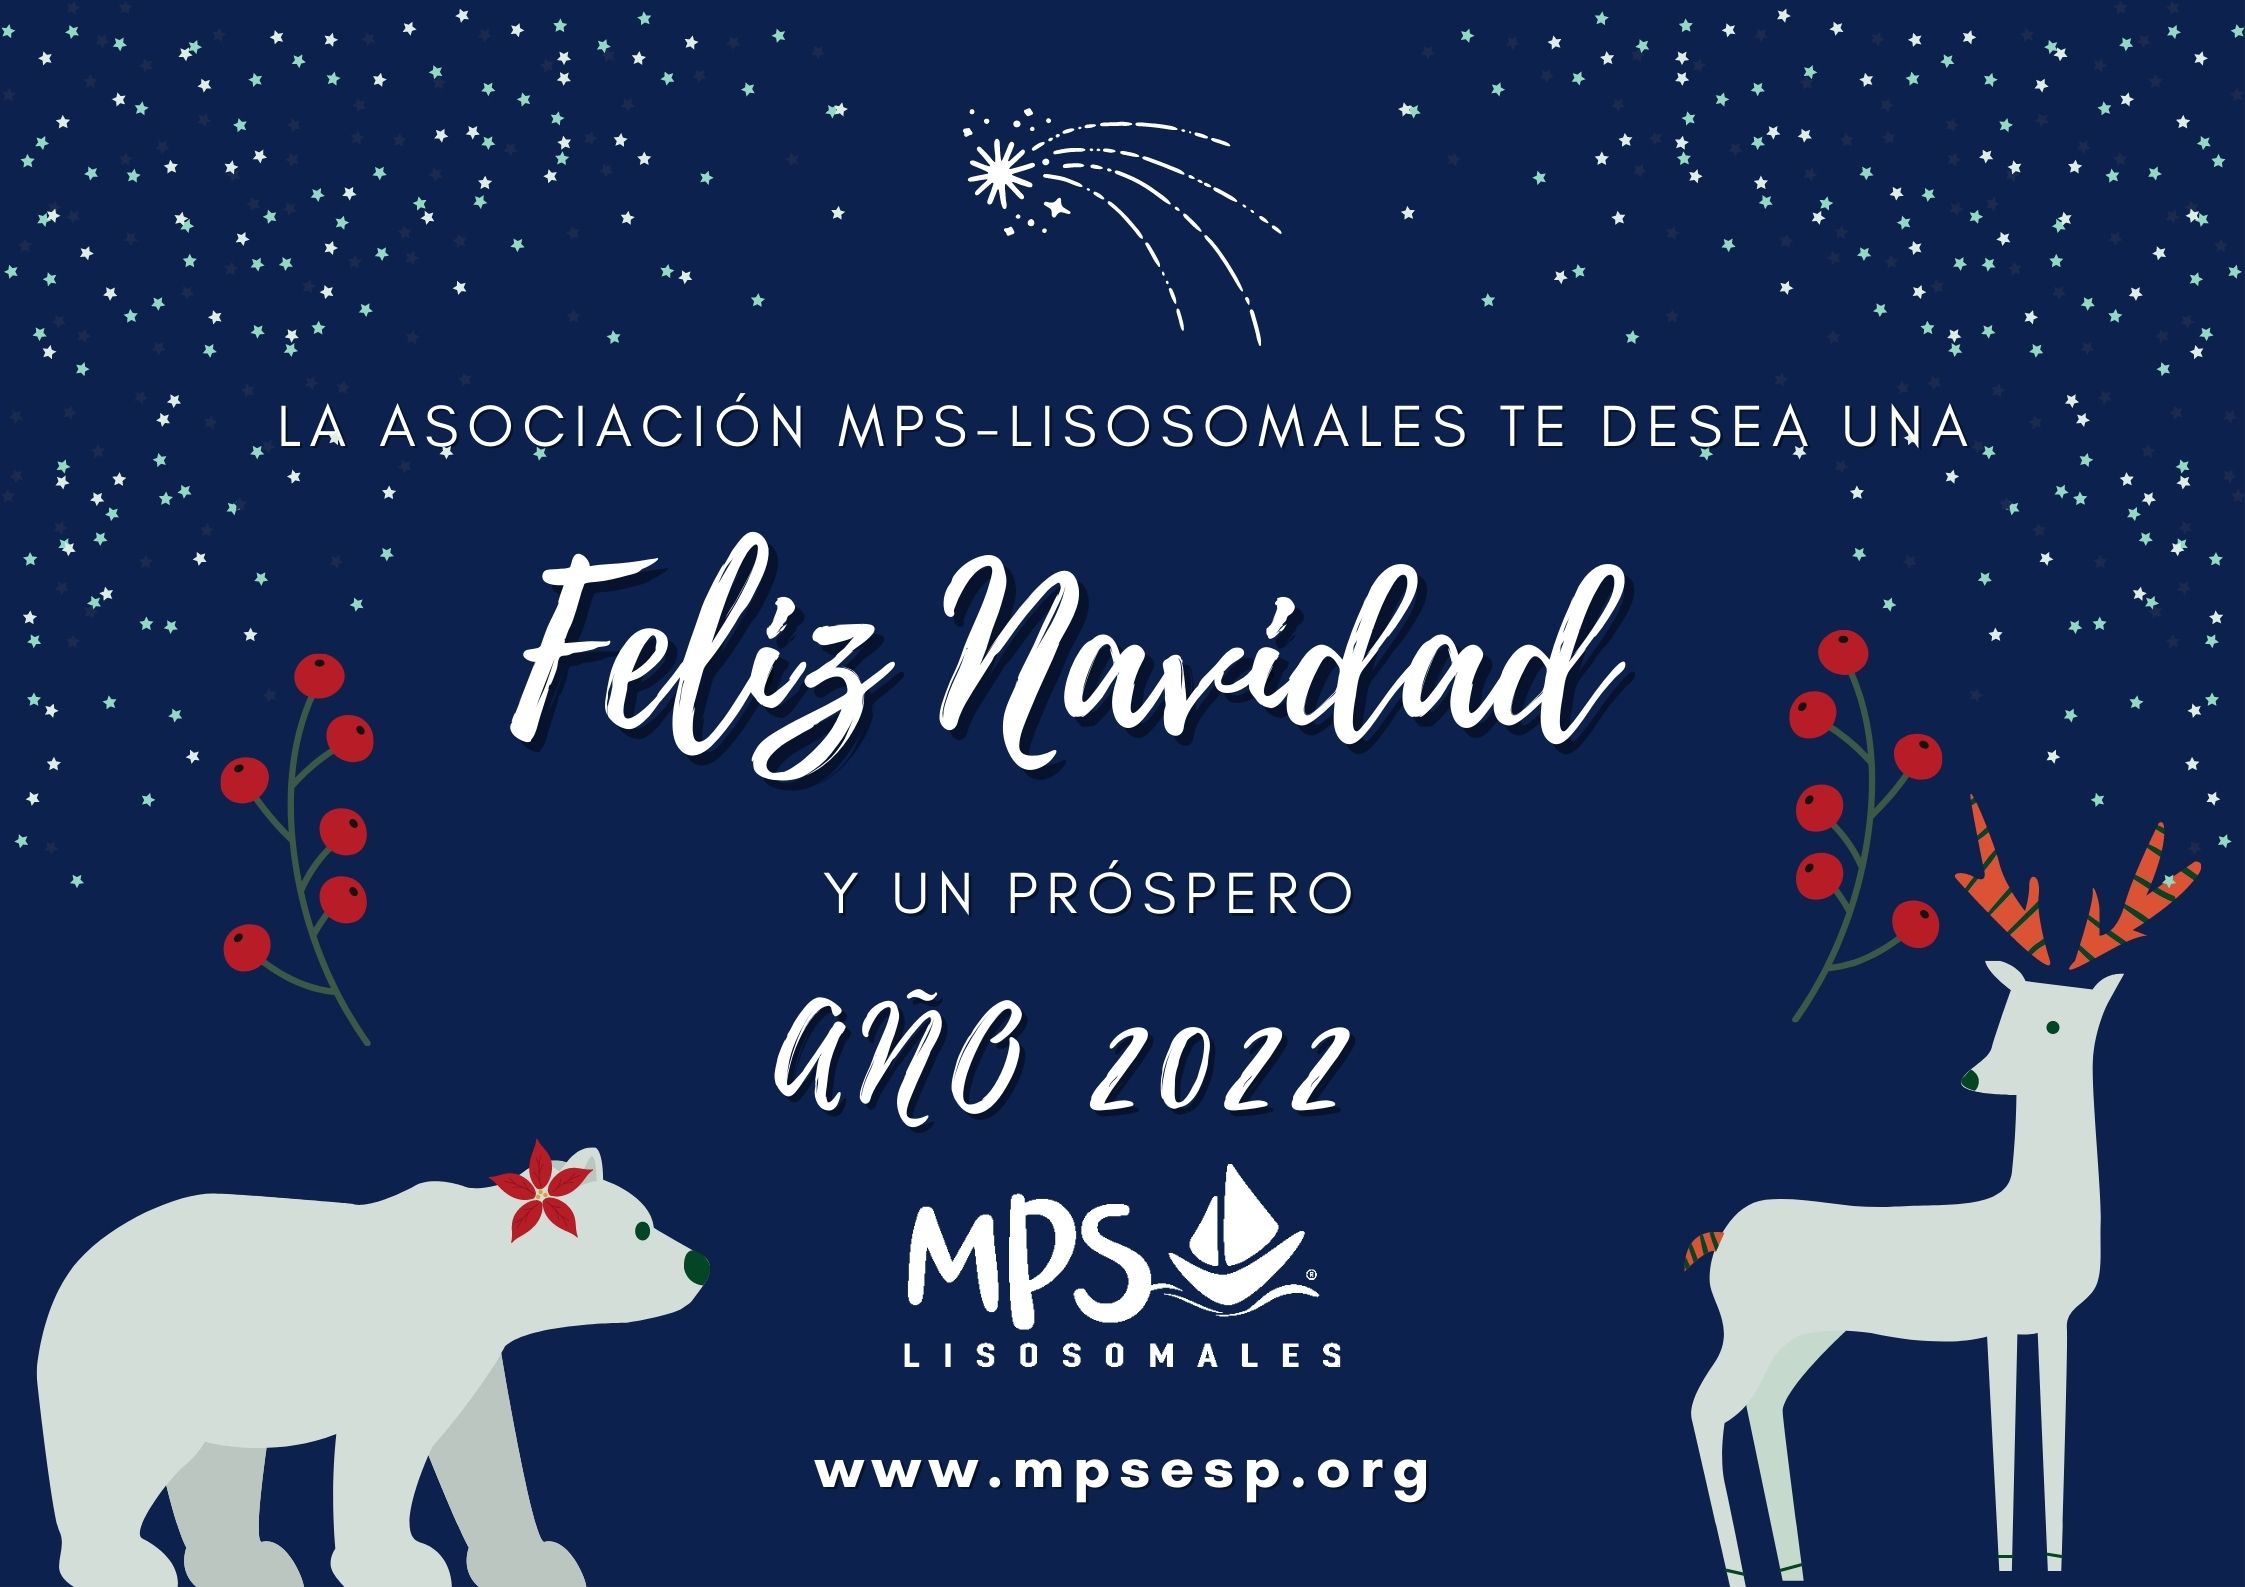 MPS os desea una Feliz Navidad y próspero año 2022